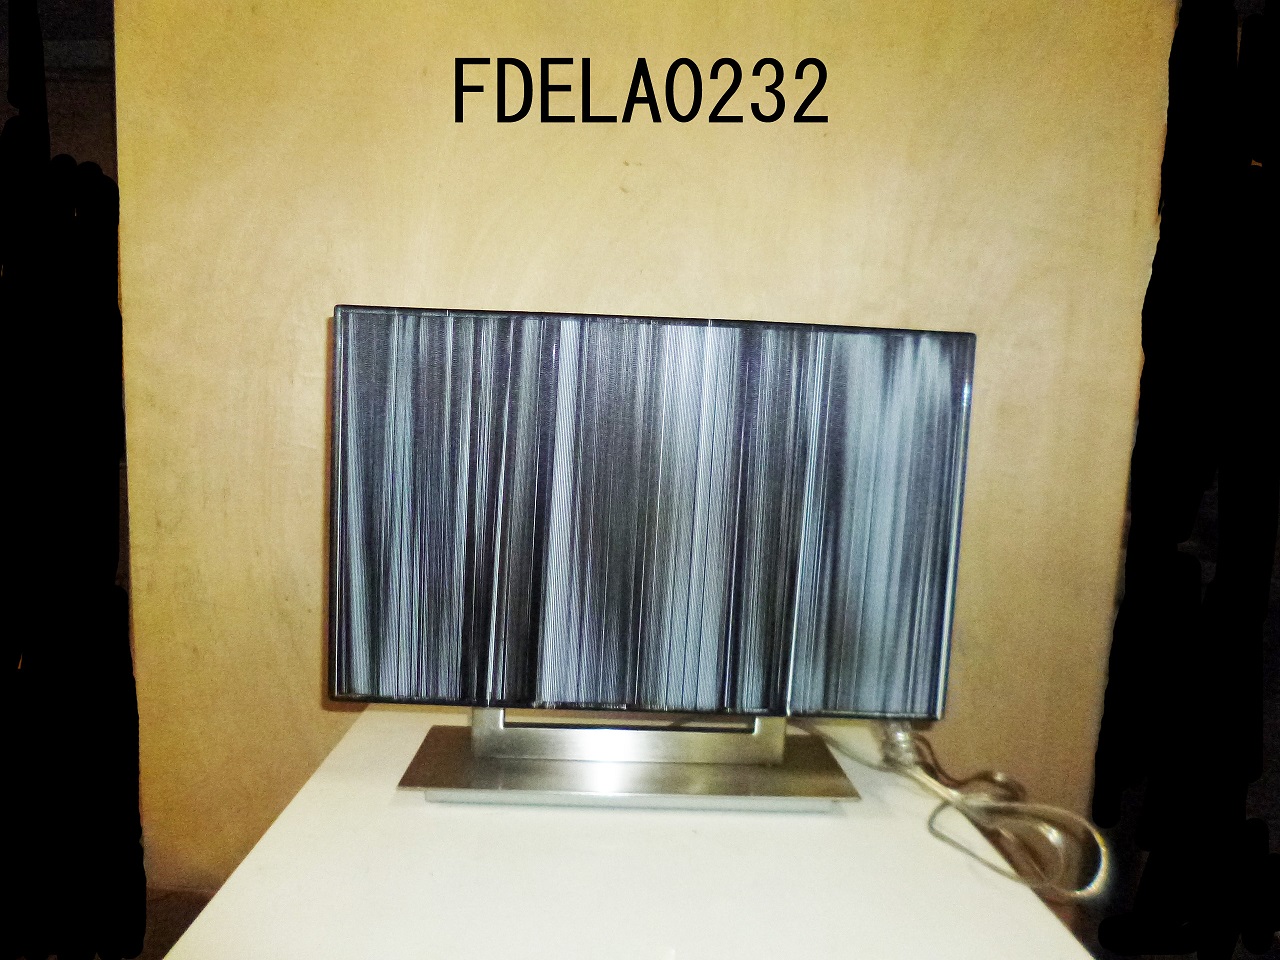 FDELA0232